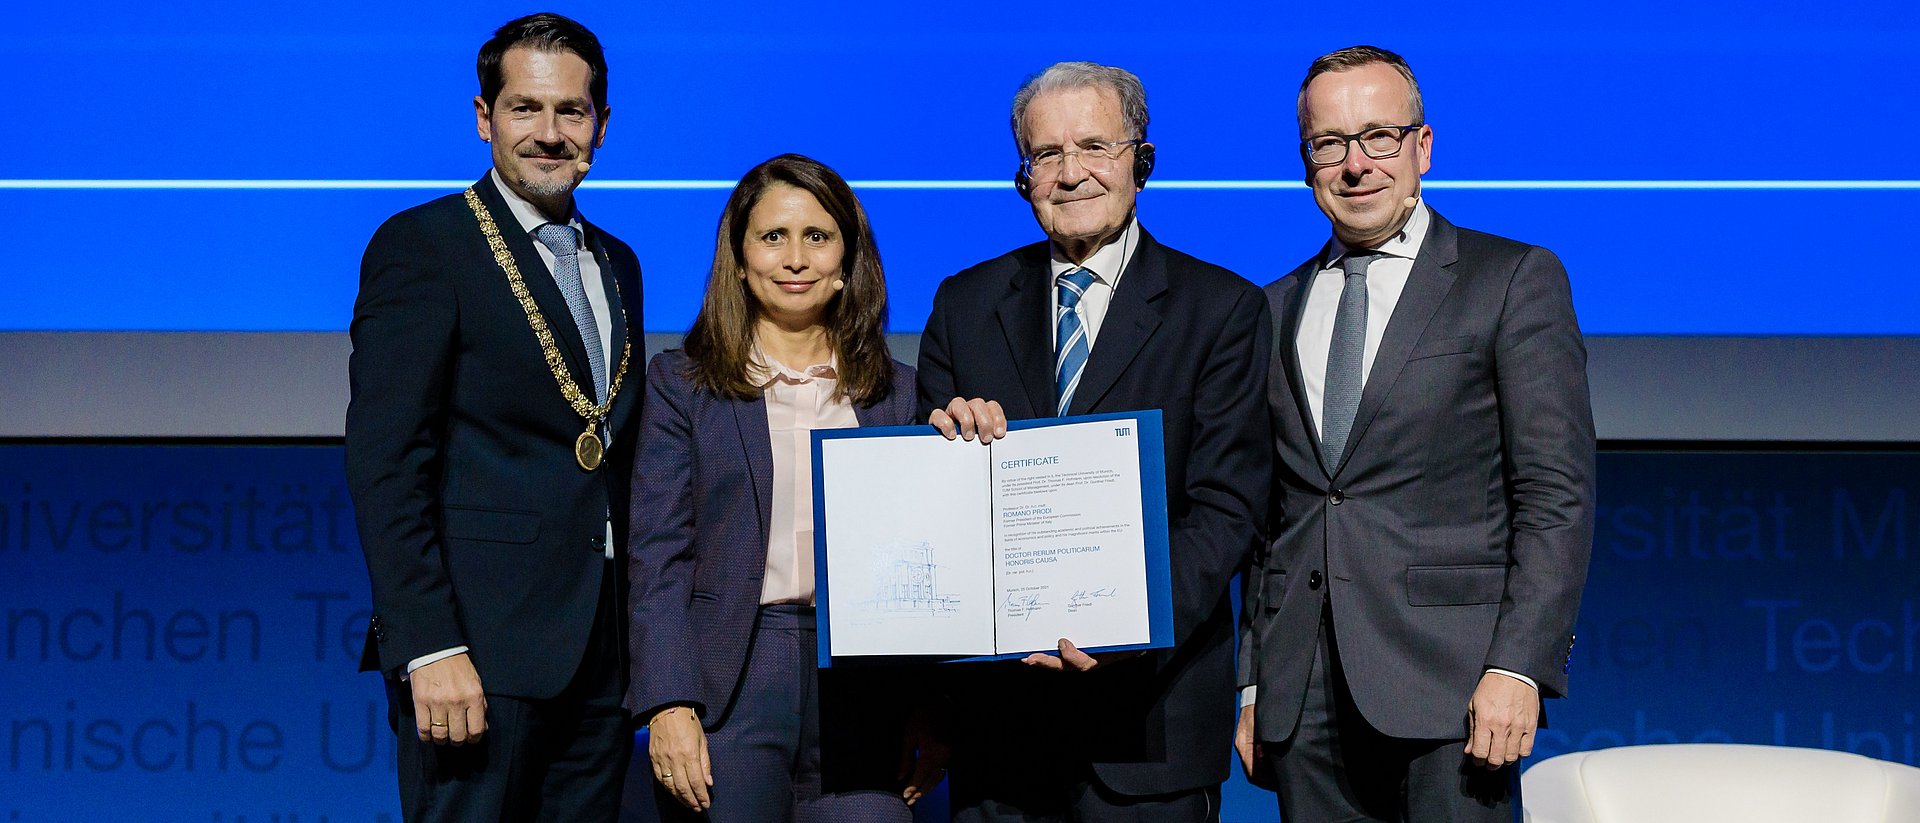 Romano Prodi mit TUM-Präsident Thomas F. Hofmann, Dekan Gunther Friedl und Eugénia da Conceição-Heldt auf der Bühne des Audimax.